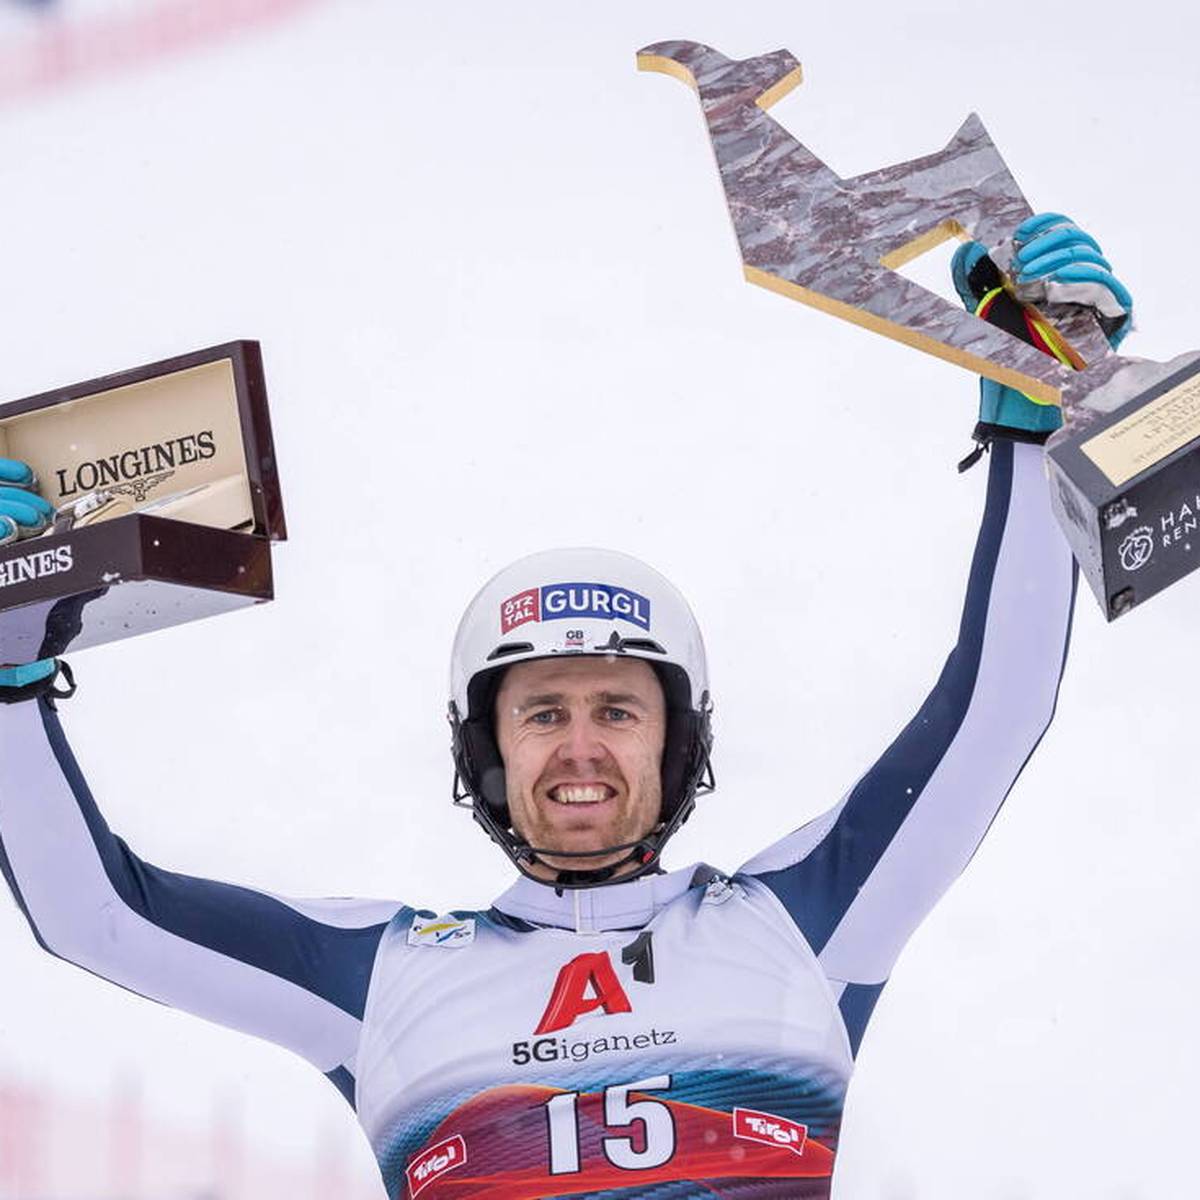 Im Januar gelingt Dave Ryding ein historischer Erfolg im alpinen Ski-Zirkus. Ein halbes Jahr später müssen er und seine Teamkollegen um ihre sportliche Zukunft bangen.